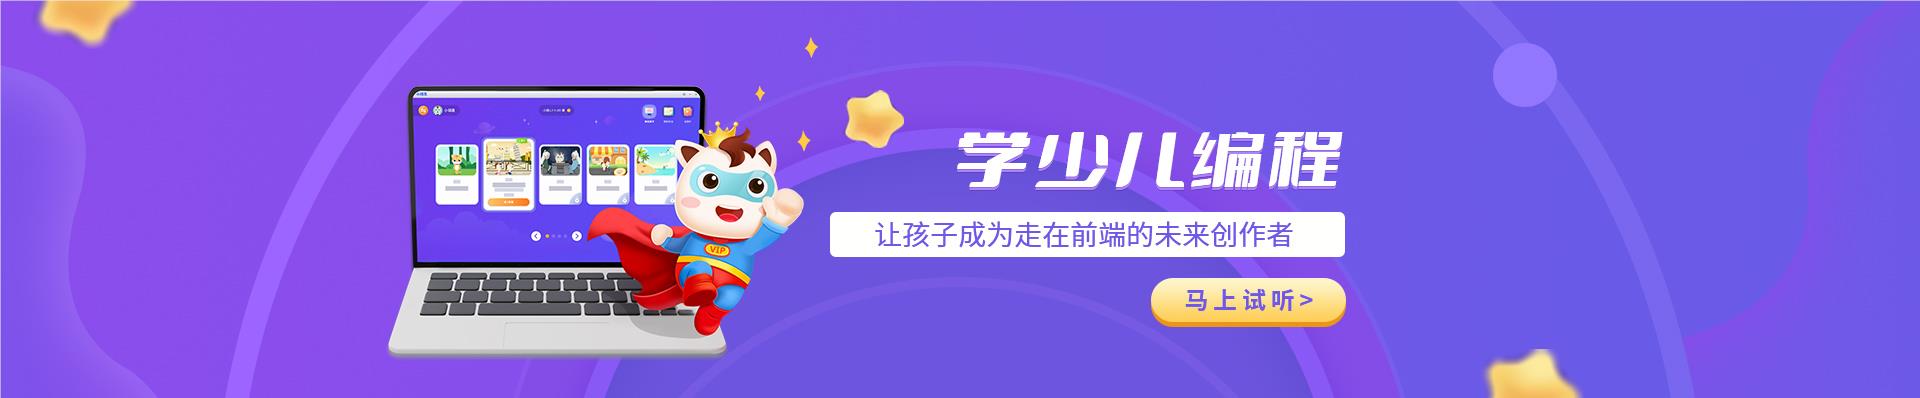 北京小码王在线少儿编程教育平台